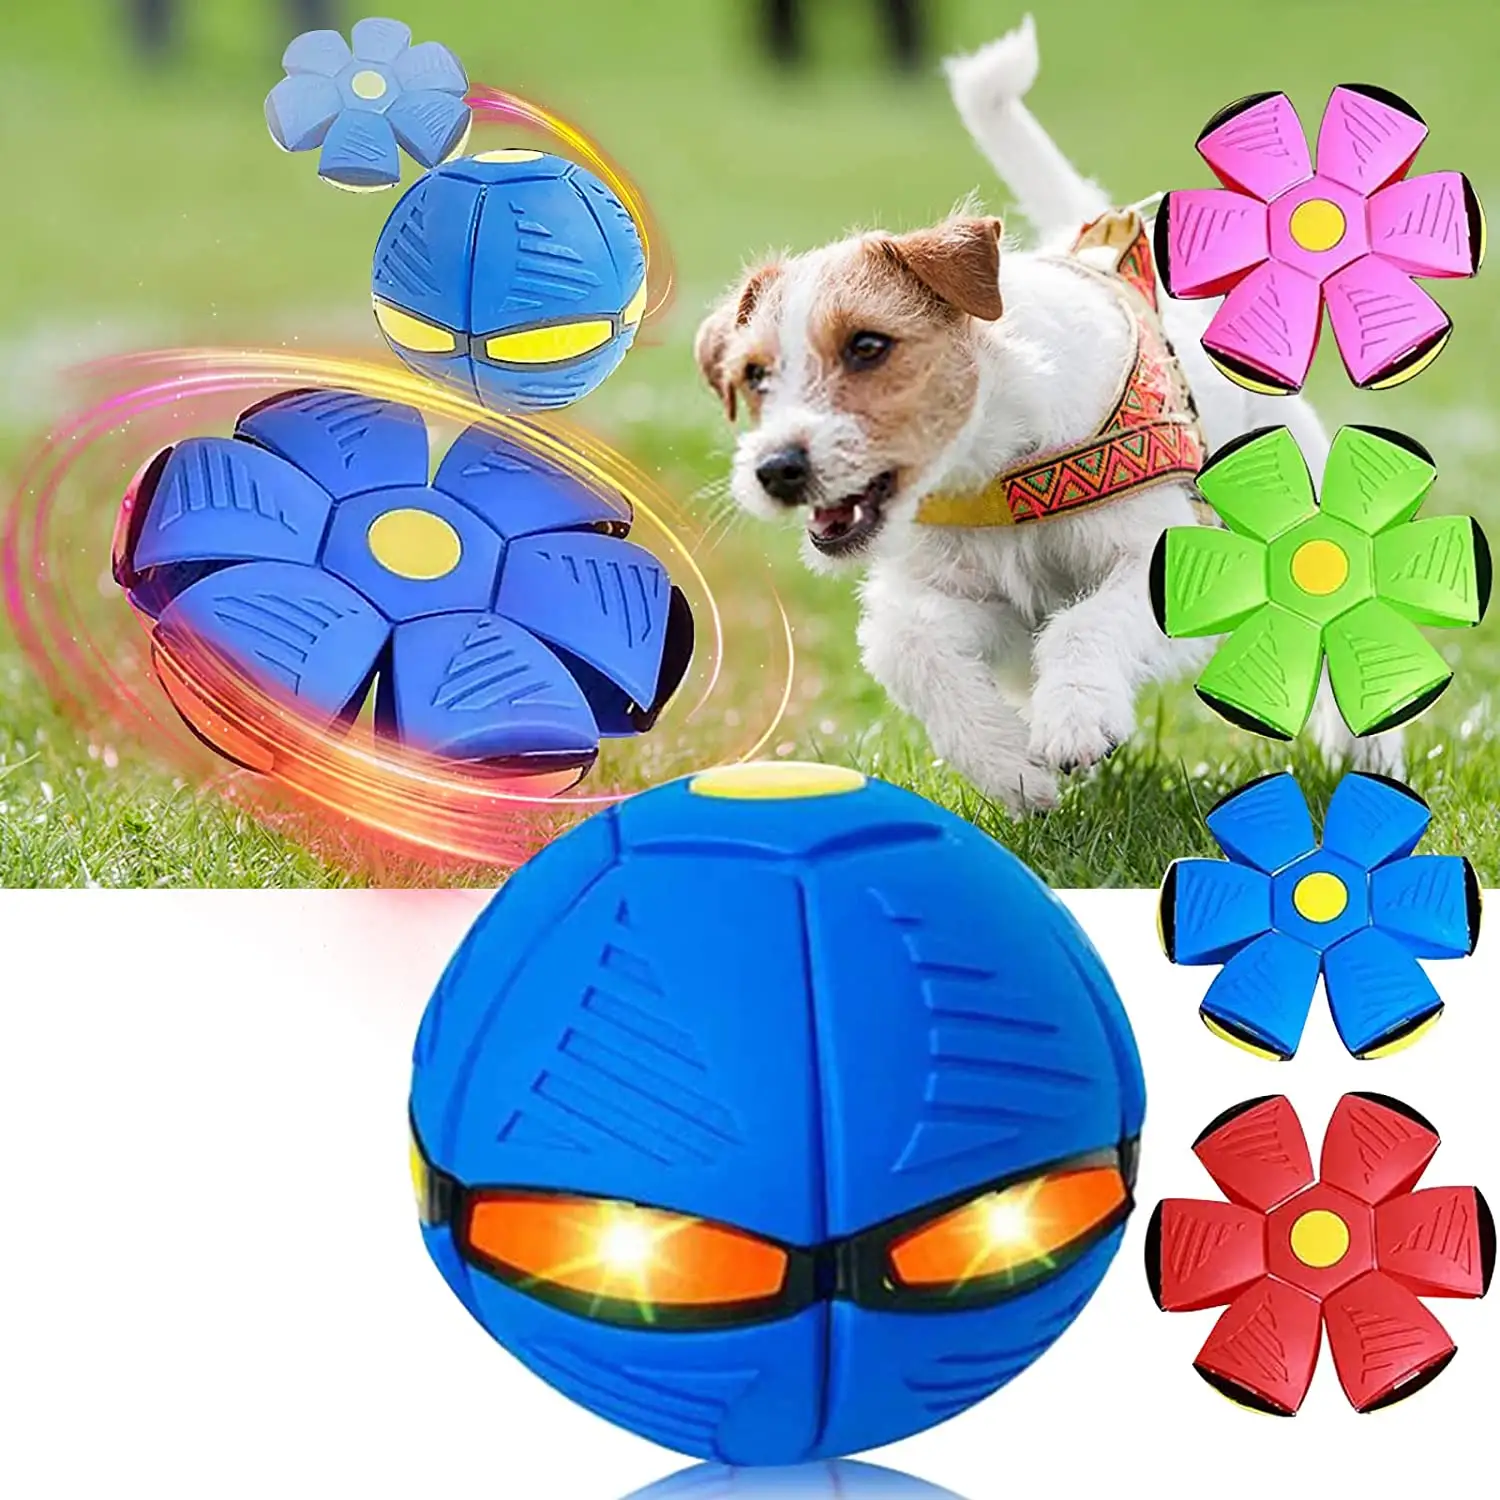 Recién llegado, juguetes para masticar perros, platillo OVNI mágico, juguete de entrenamiento para mascotas, pelota voladora para exteriores, bolas interactivas para perros, juguetes para perros